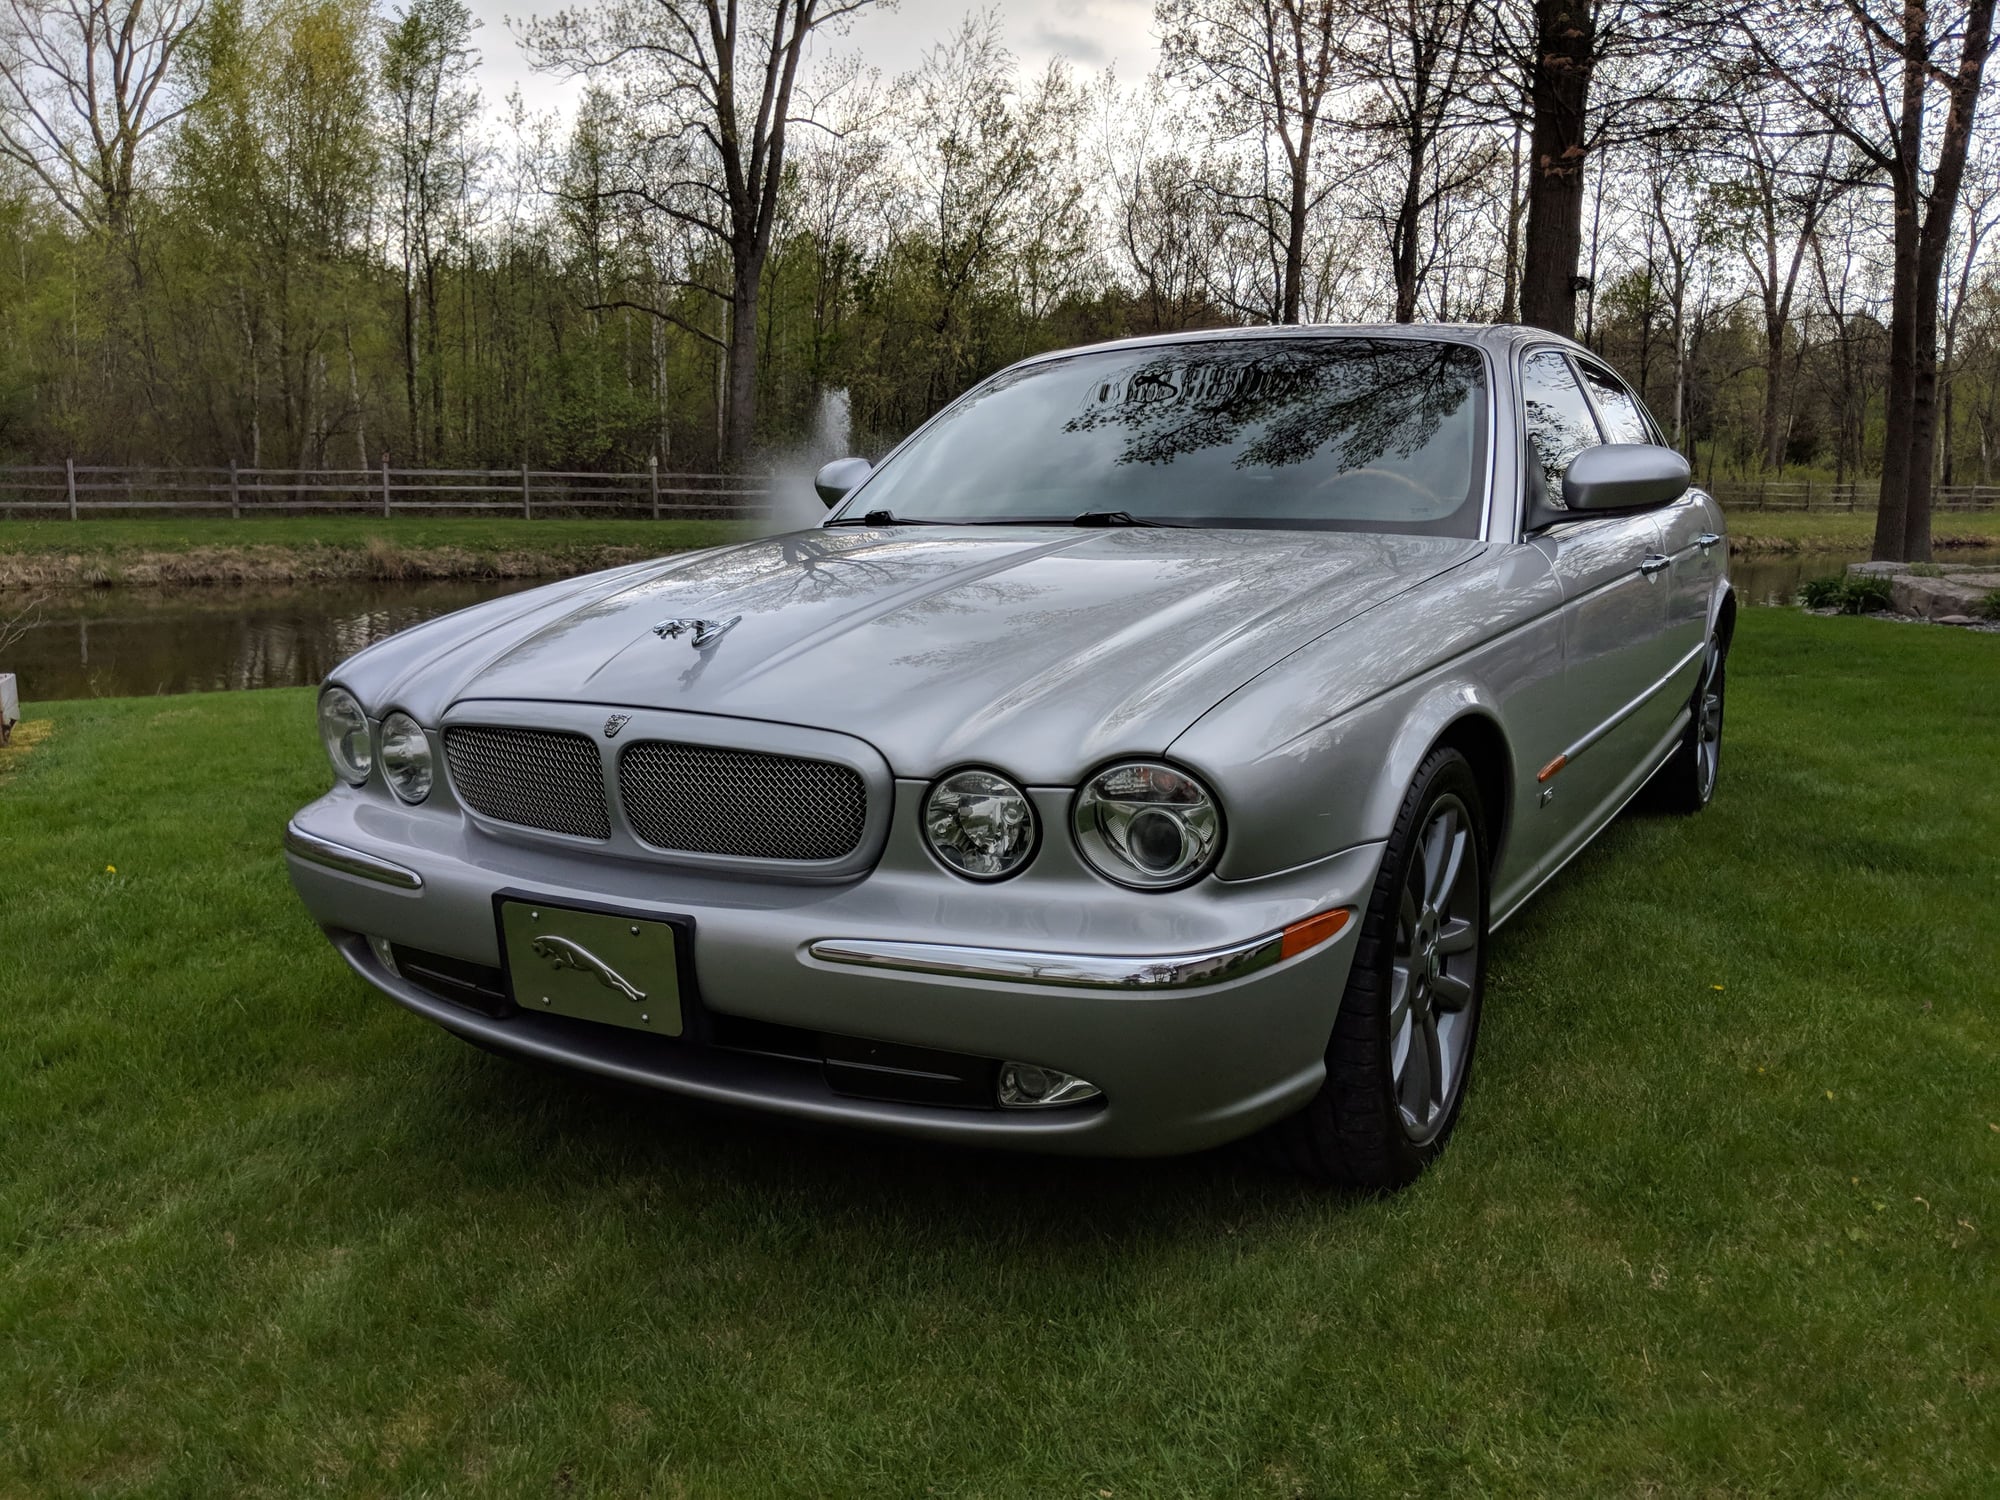 2004 Jaguar XJR - 2004 XJR 125k miles - Used - VIN SAJEA73B04TG11101 - 125,000 Miles - 8 cyl - 2WD - Automatic - Sedan - Silver - Bay City, MI 48706, United States